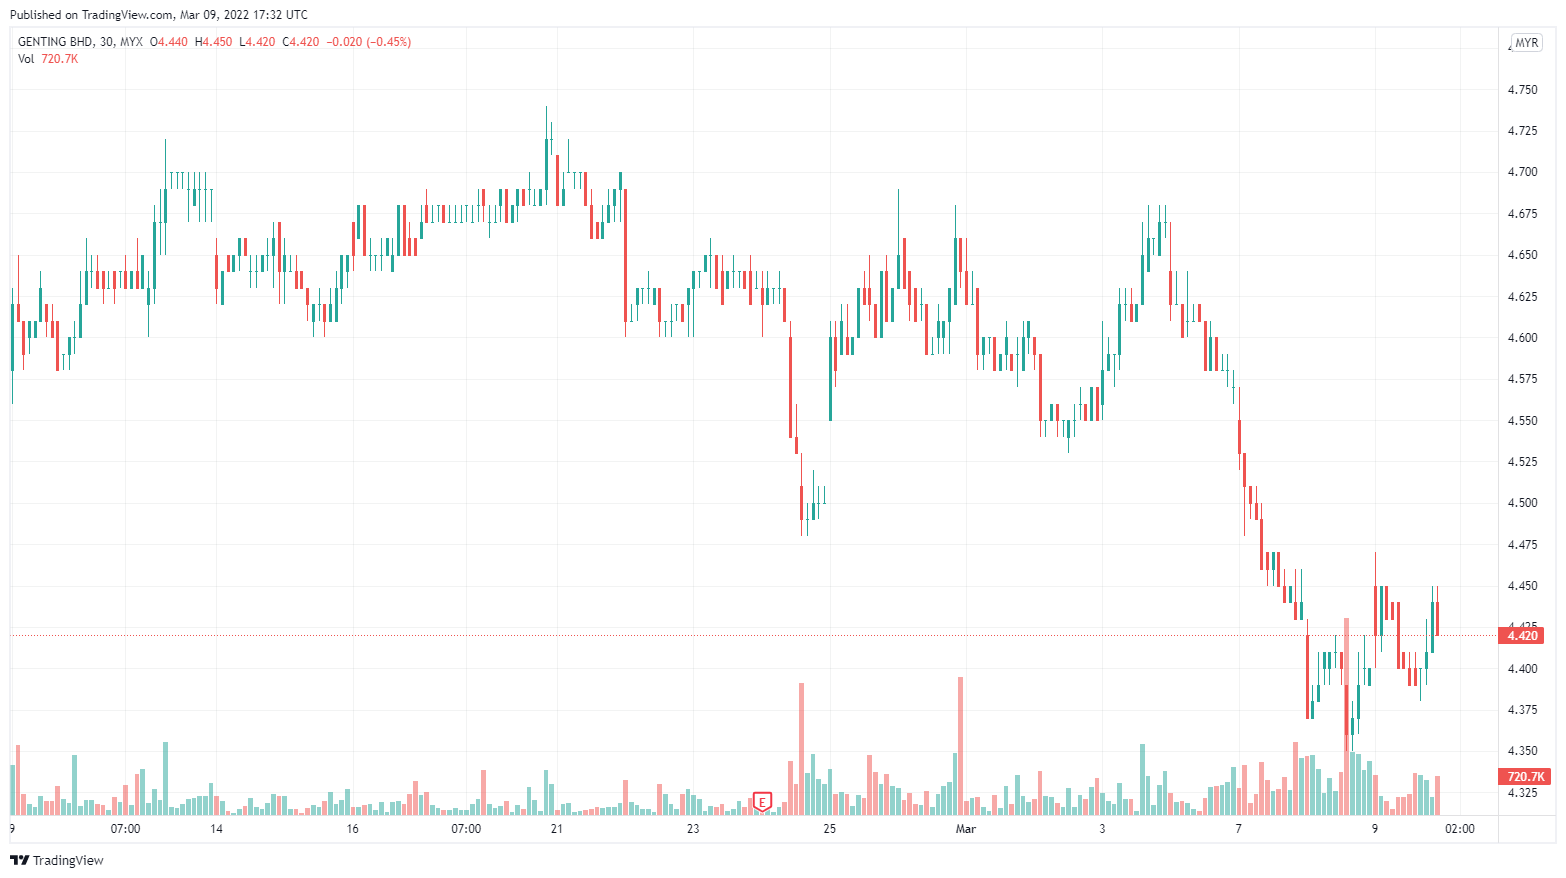 Klse price genting share Stock: [GENTING]: